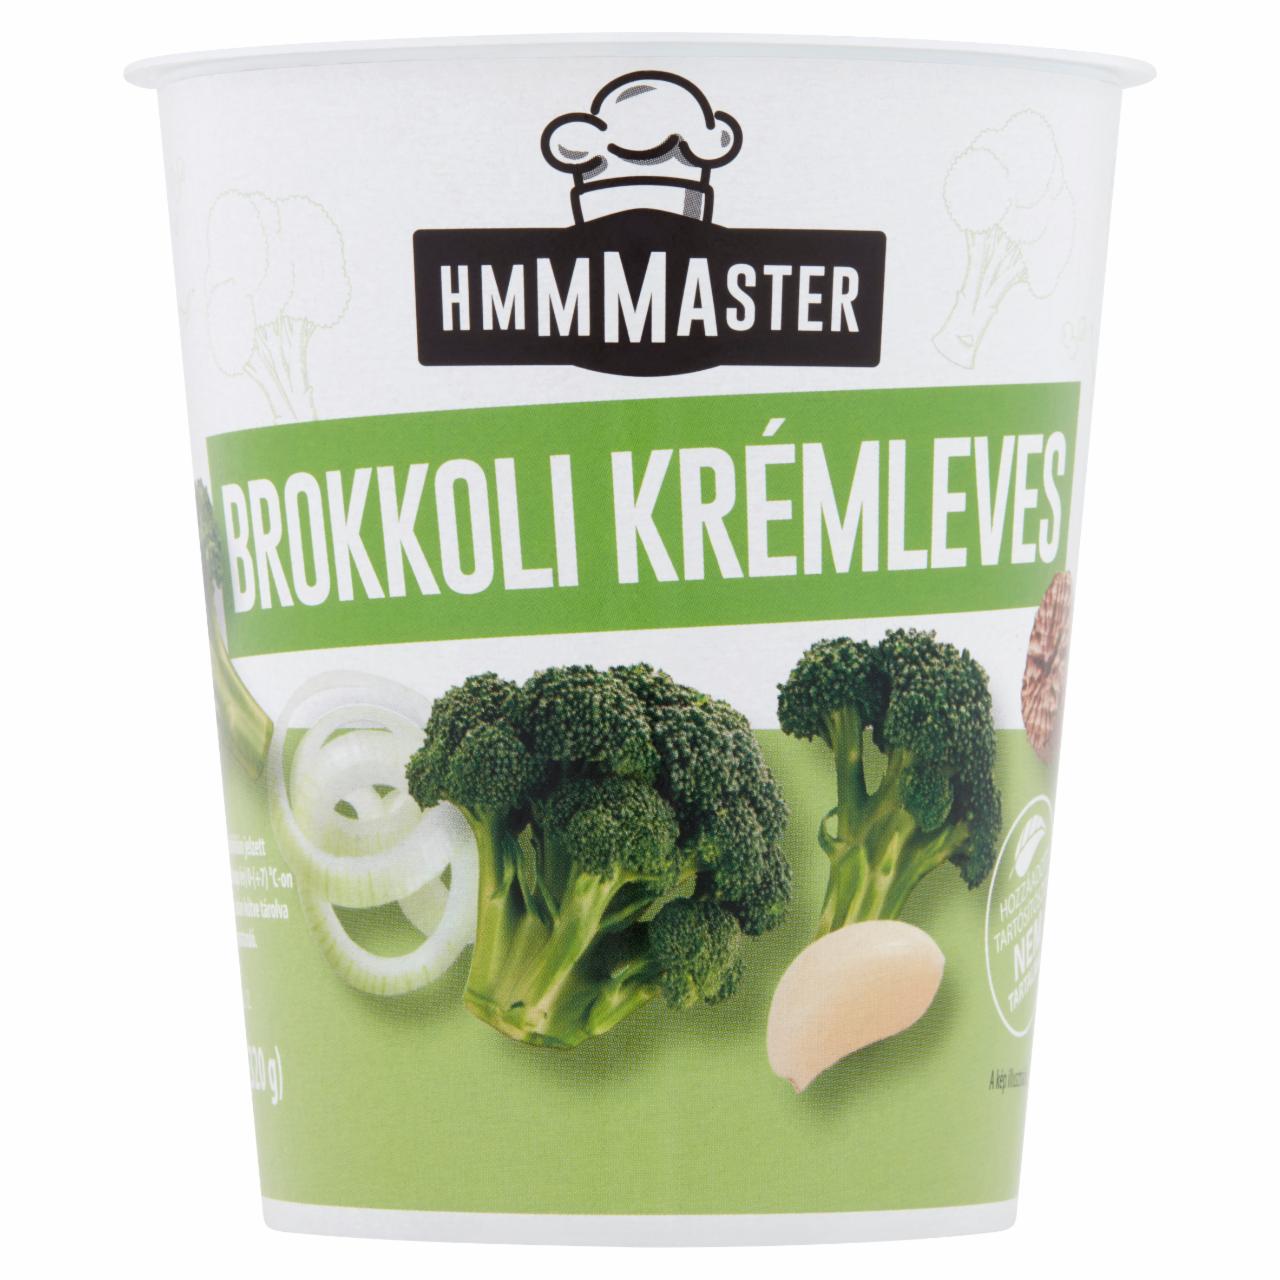 Képek - Hmmmaster brokkoli krémleves 330 ml